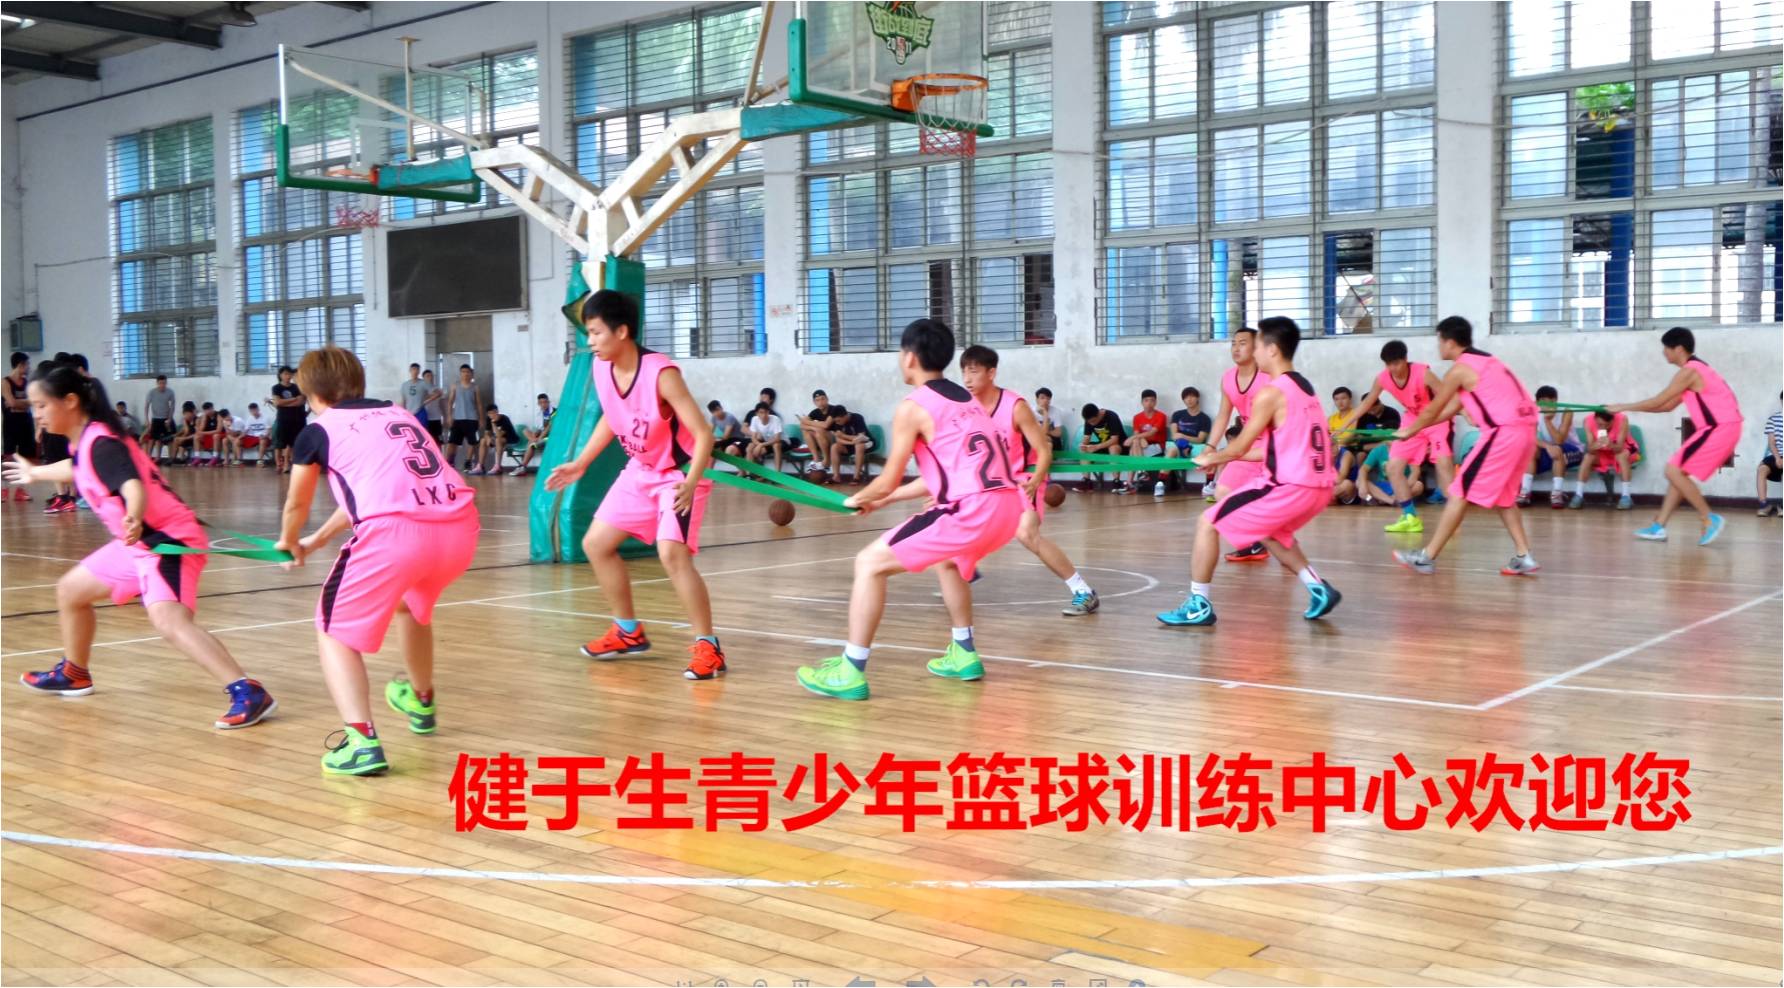 想学习篮球吗,那就找广州体院健于行青少年篮